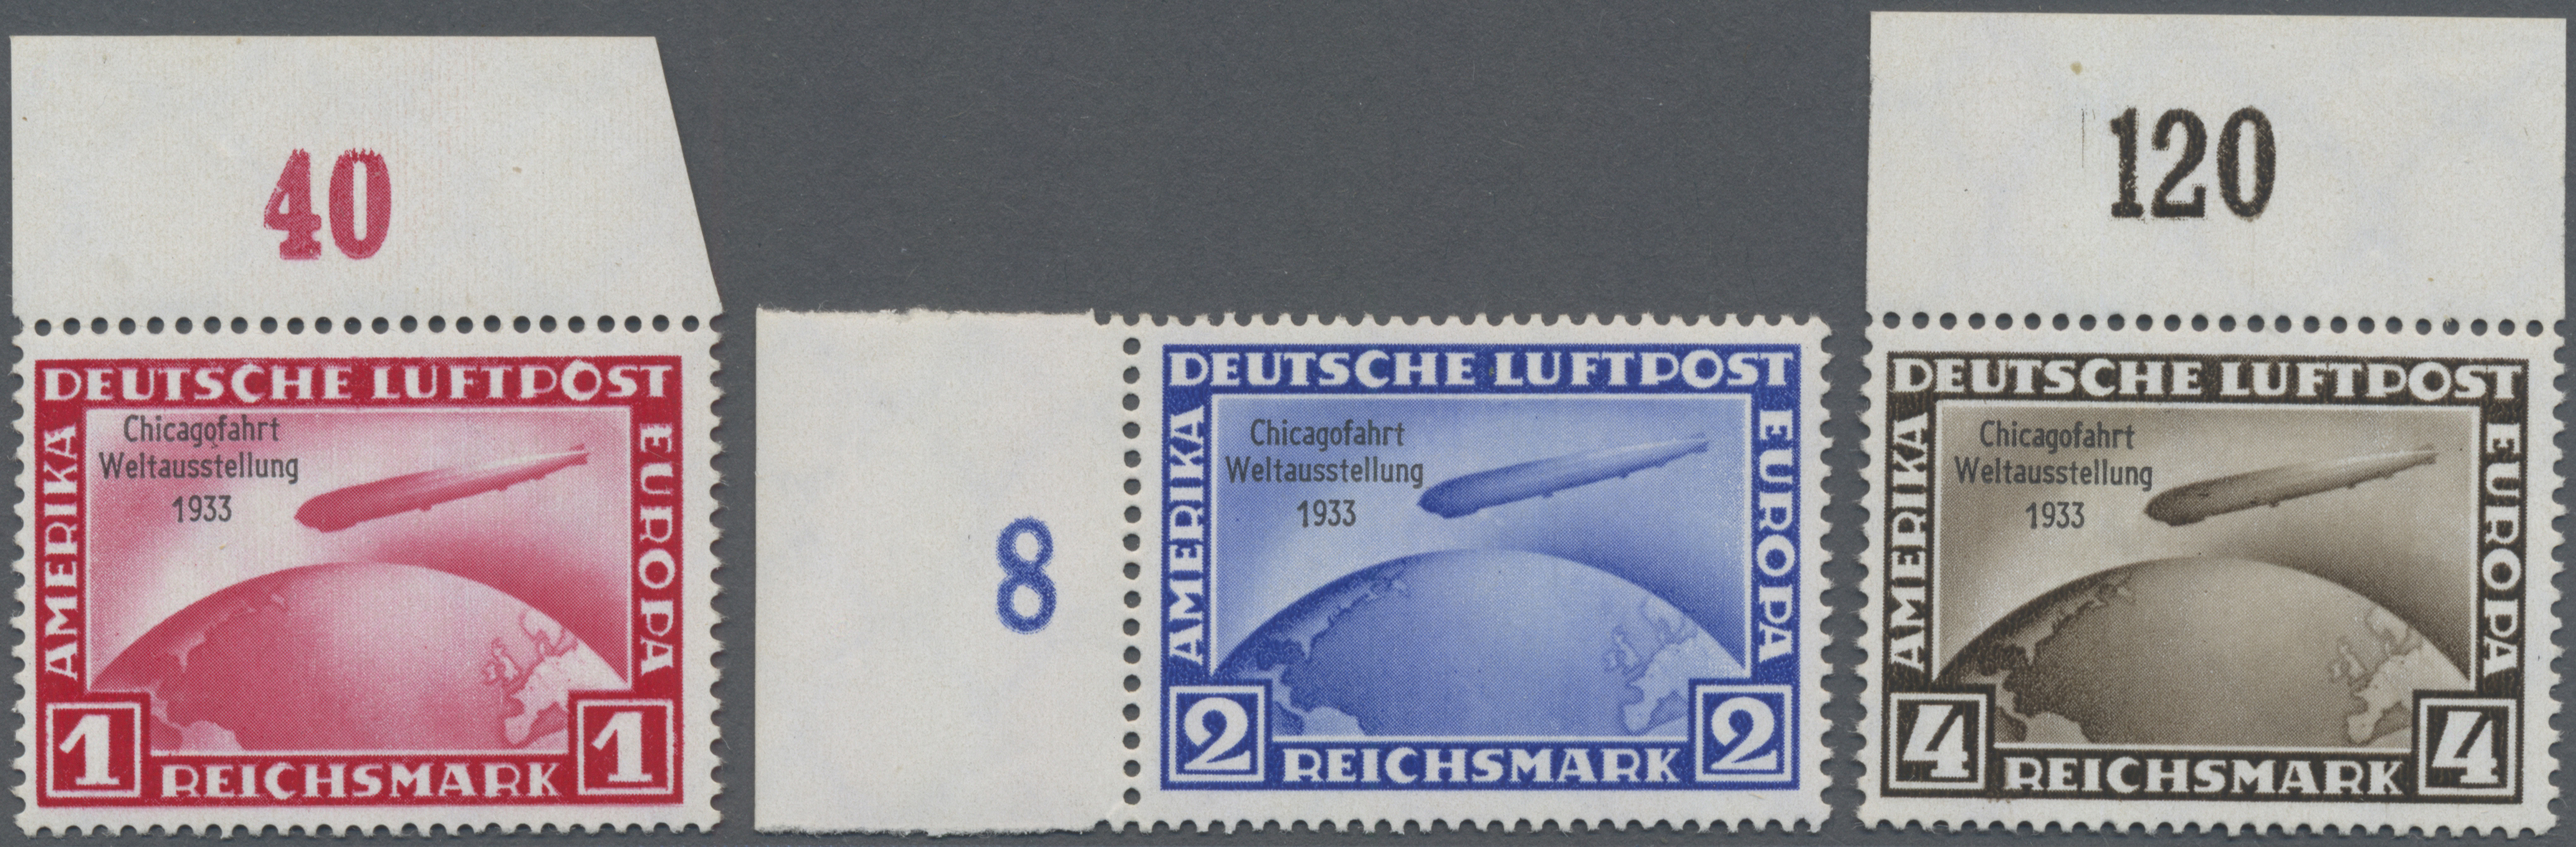 Lot 04930 - Deutsches Reich - 3. Reich  -  Auktionshaus Christoph Gärtner GmbH & Co. KG 56th AUCTION - Day 3